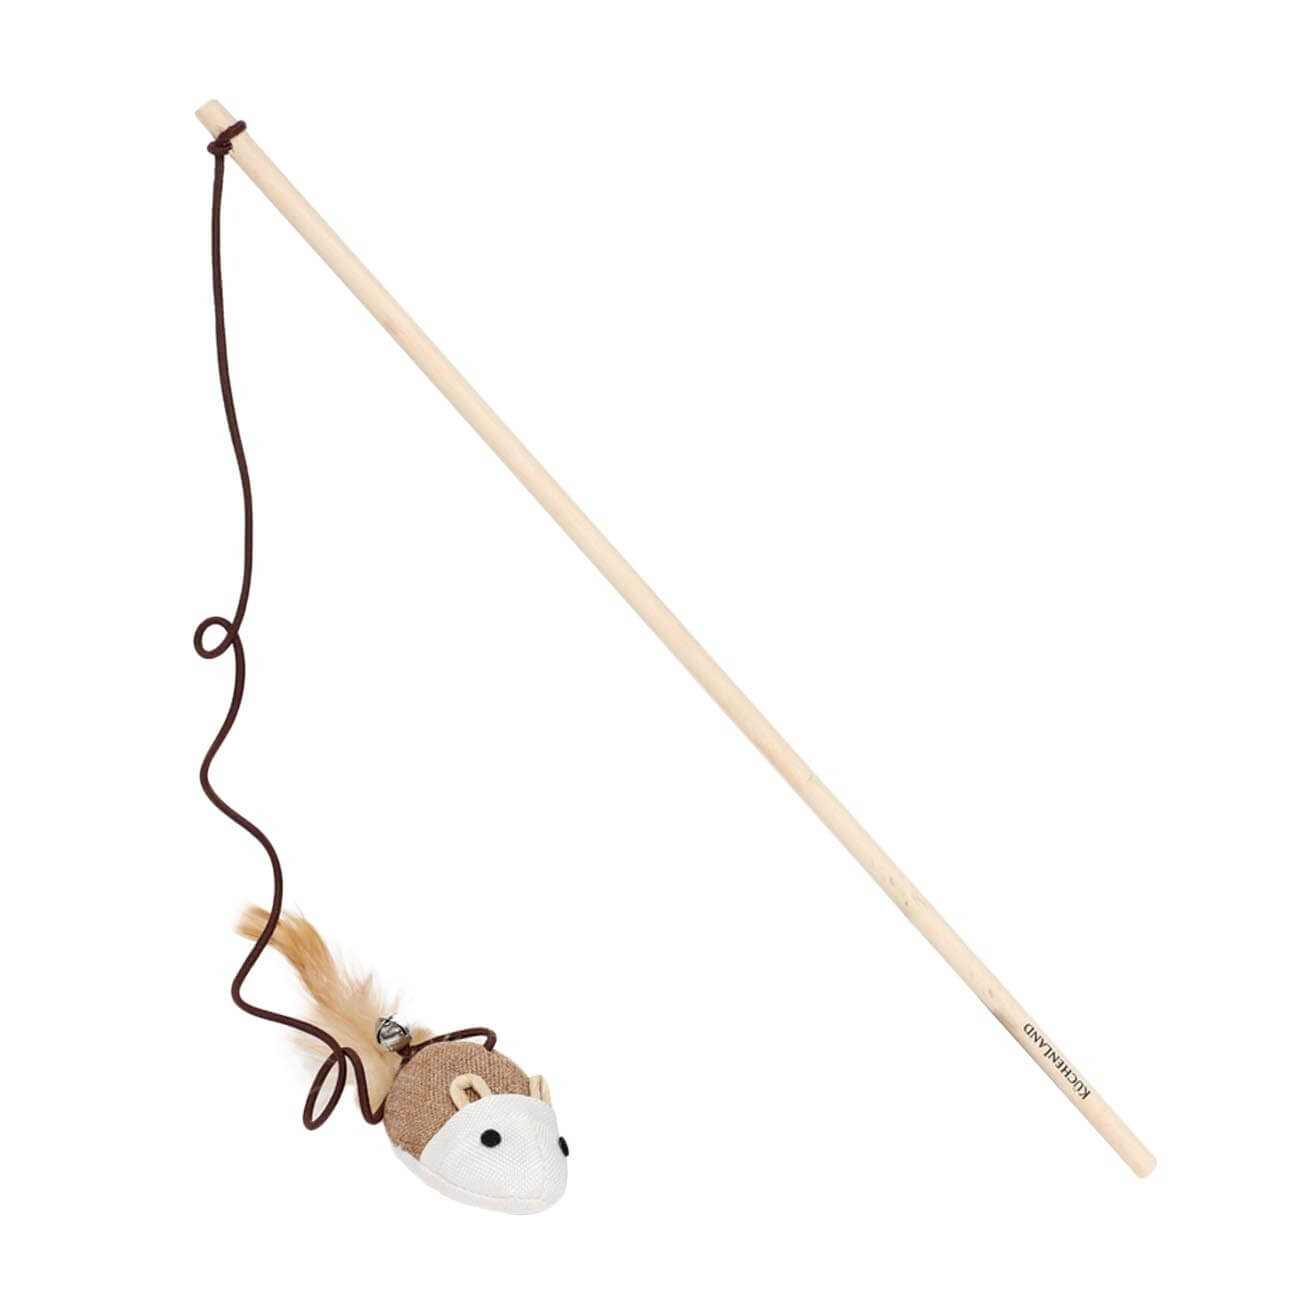 Игрушка-удочка для кошек, 1,1 м, с колокольчиком, дерево/полиэстер, Мышь, Playful cat игрушка сортер занимательный паровоз